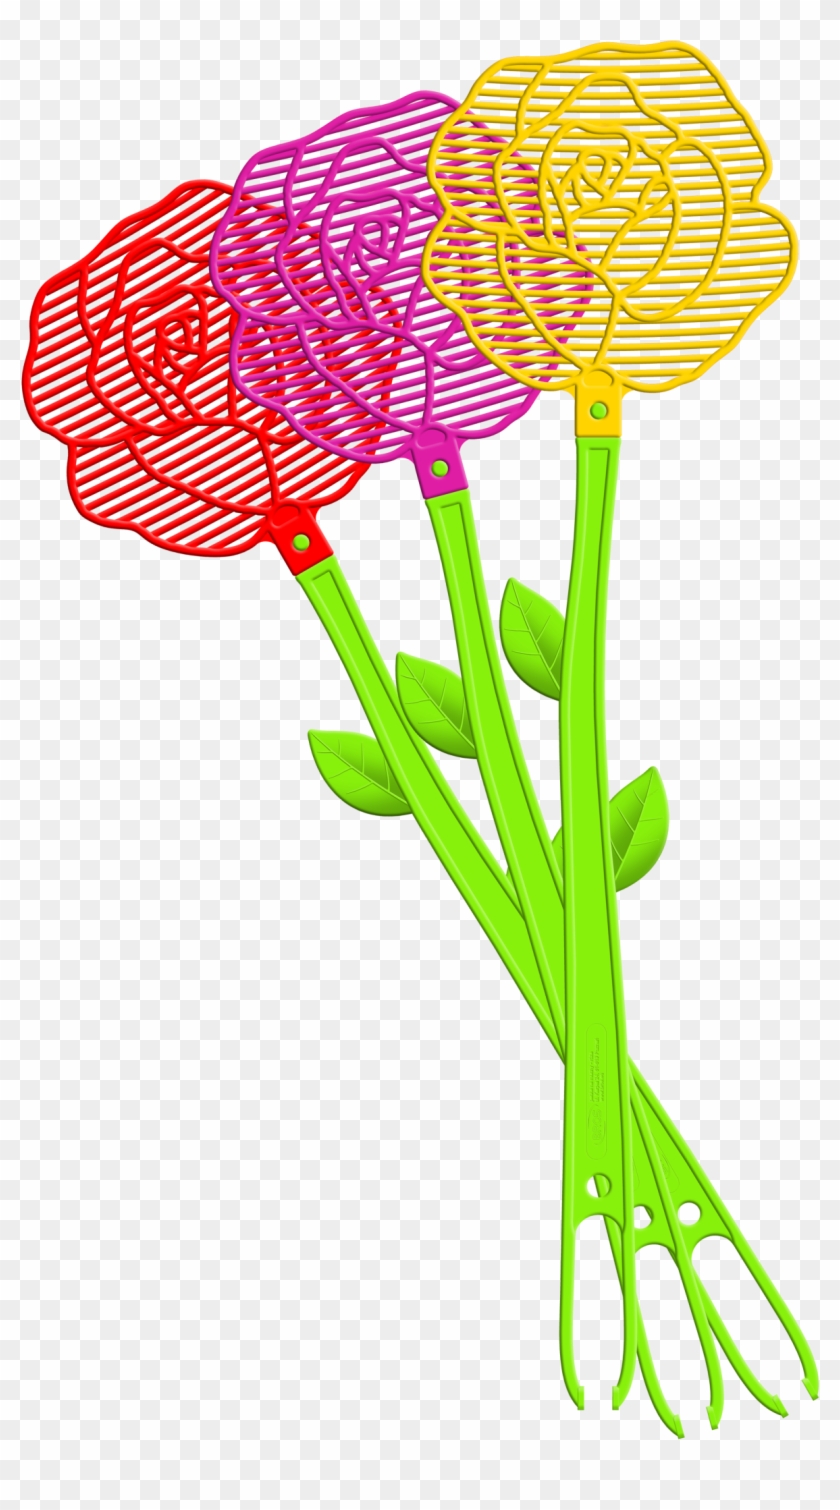 Bros Flower Fly Swatter - Fly Swatter Flower #1730488